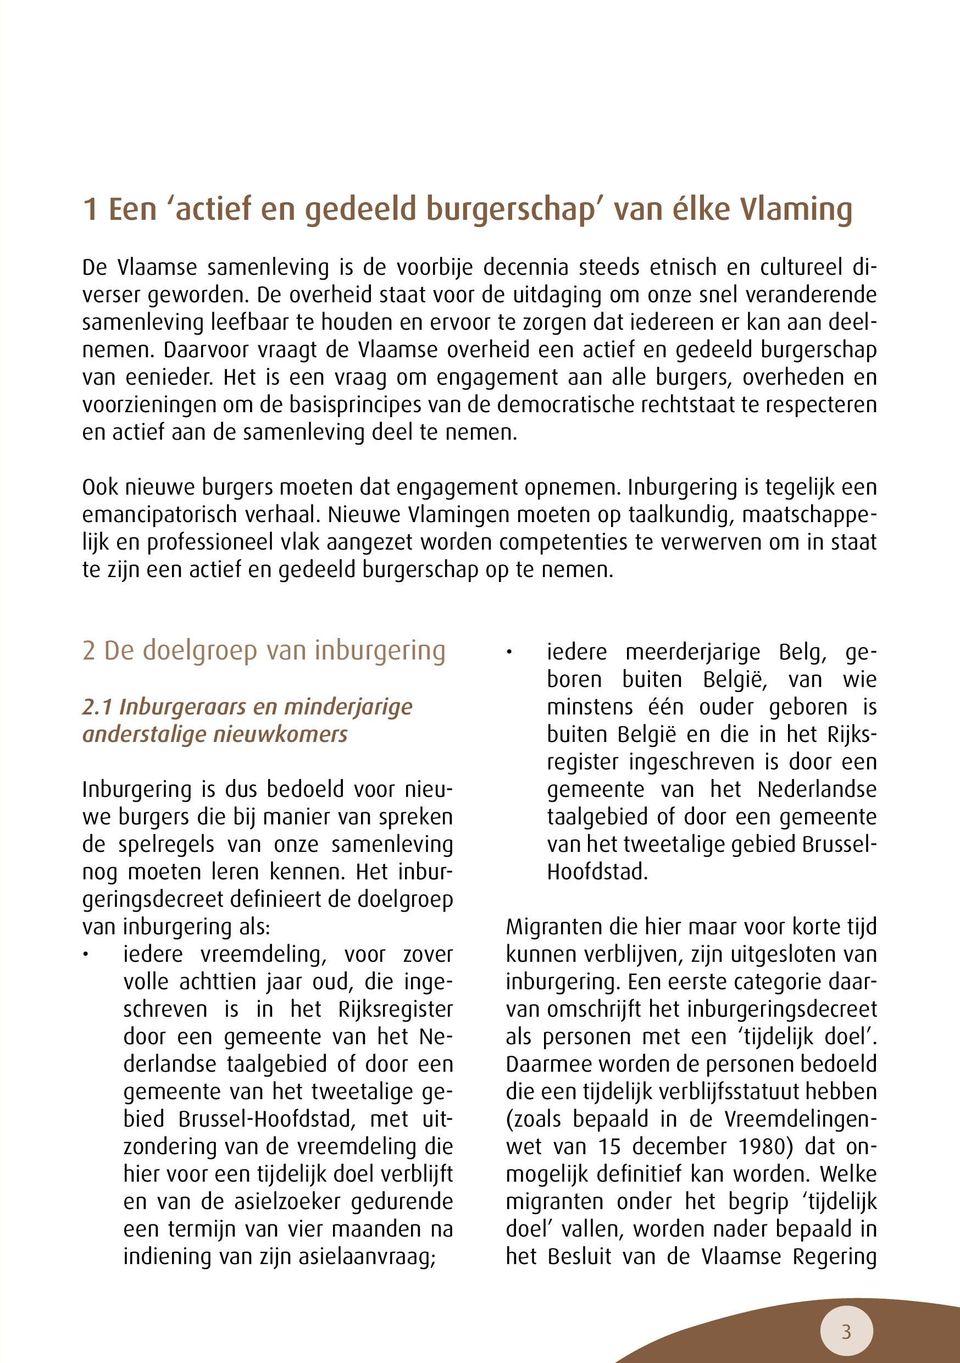 Daarvoor vraagt de Vlaamse overheid een actief en gedeeld burgerschap van eenieder.